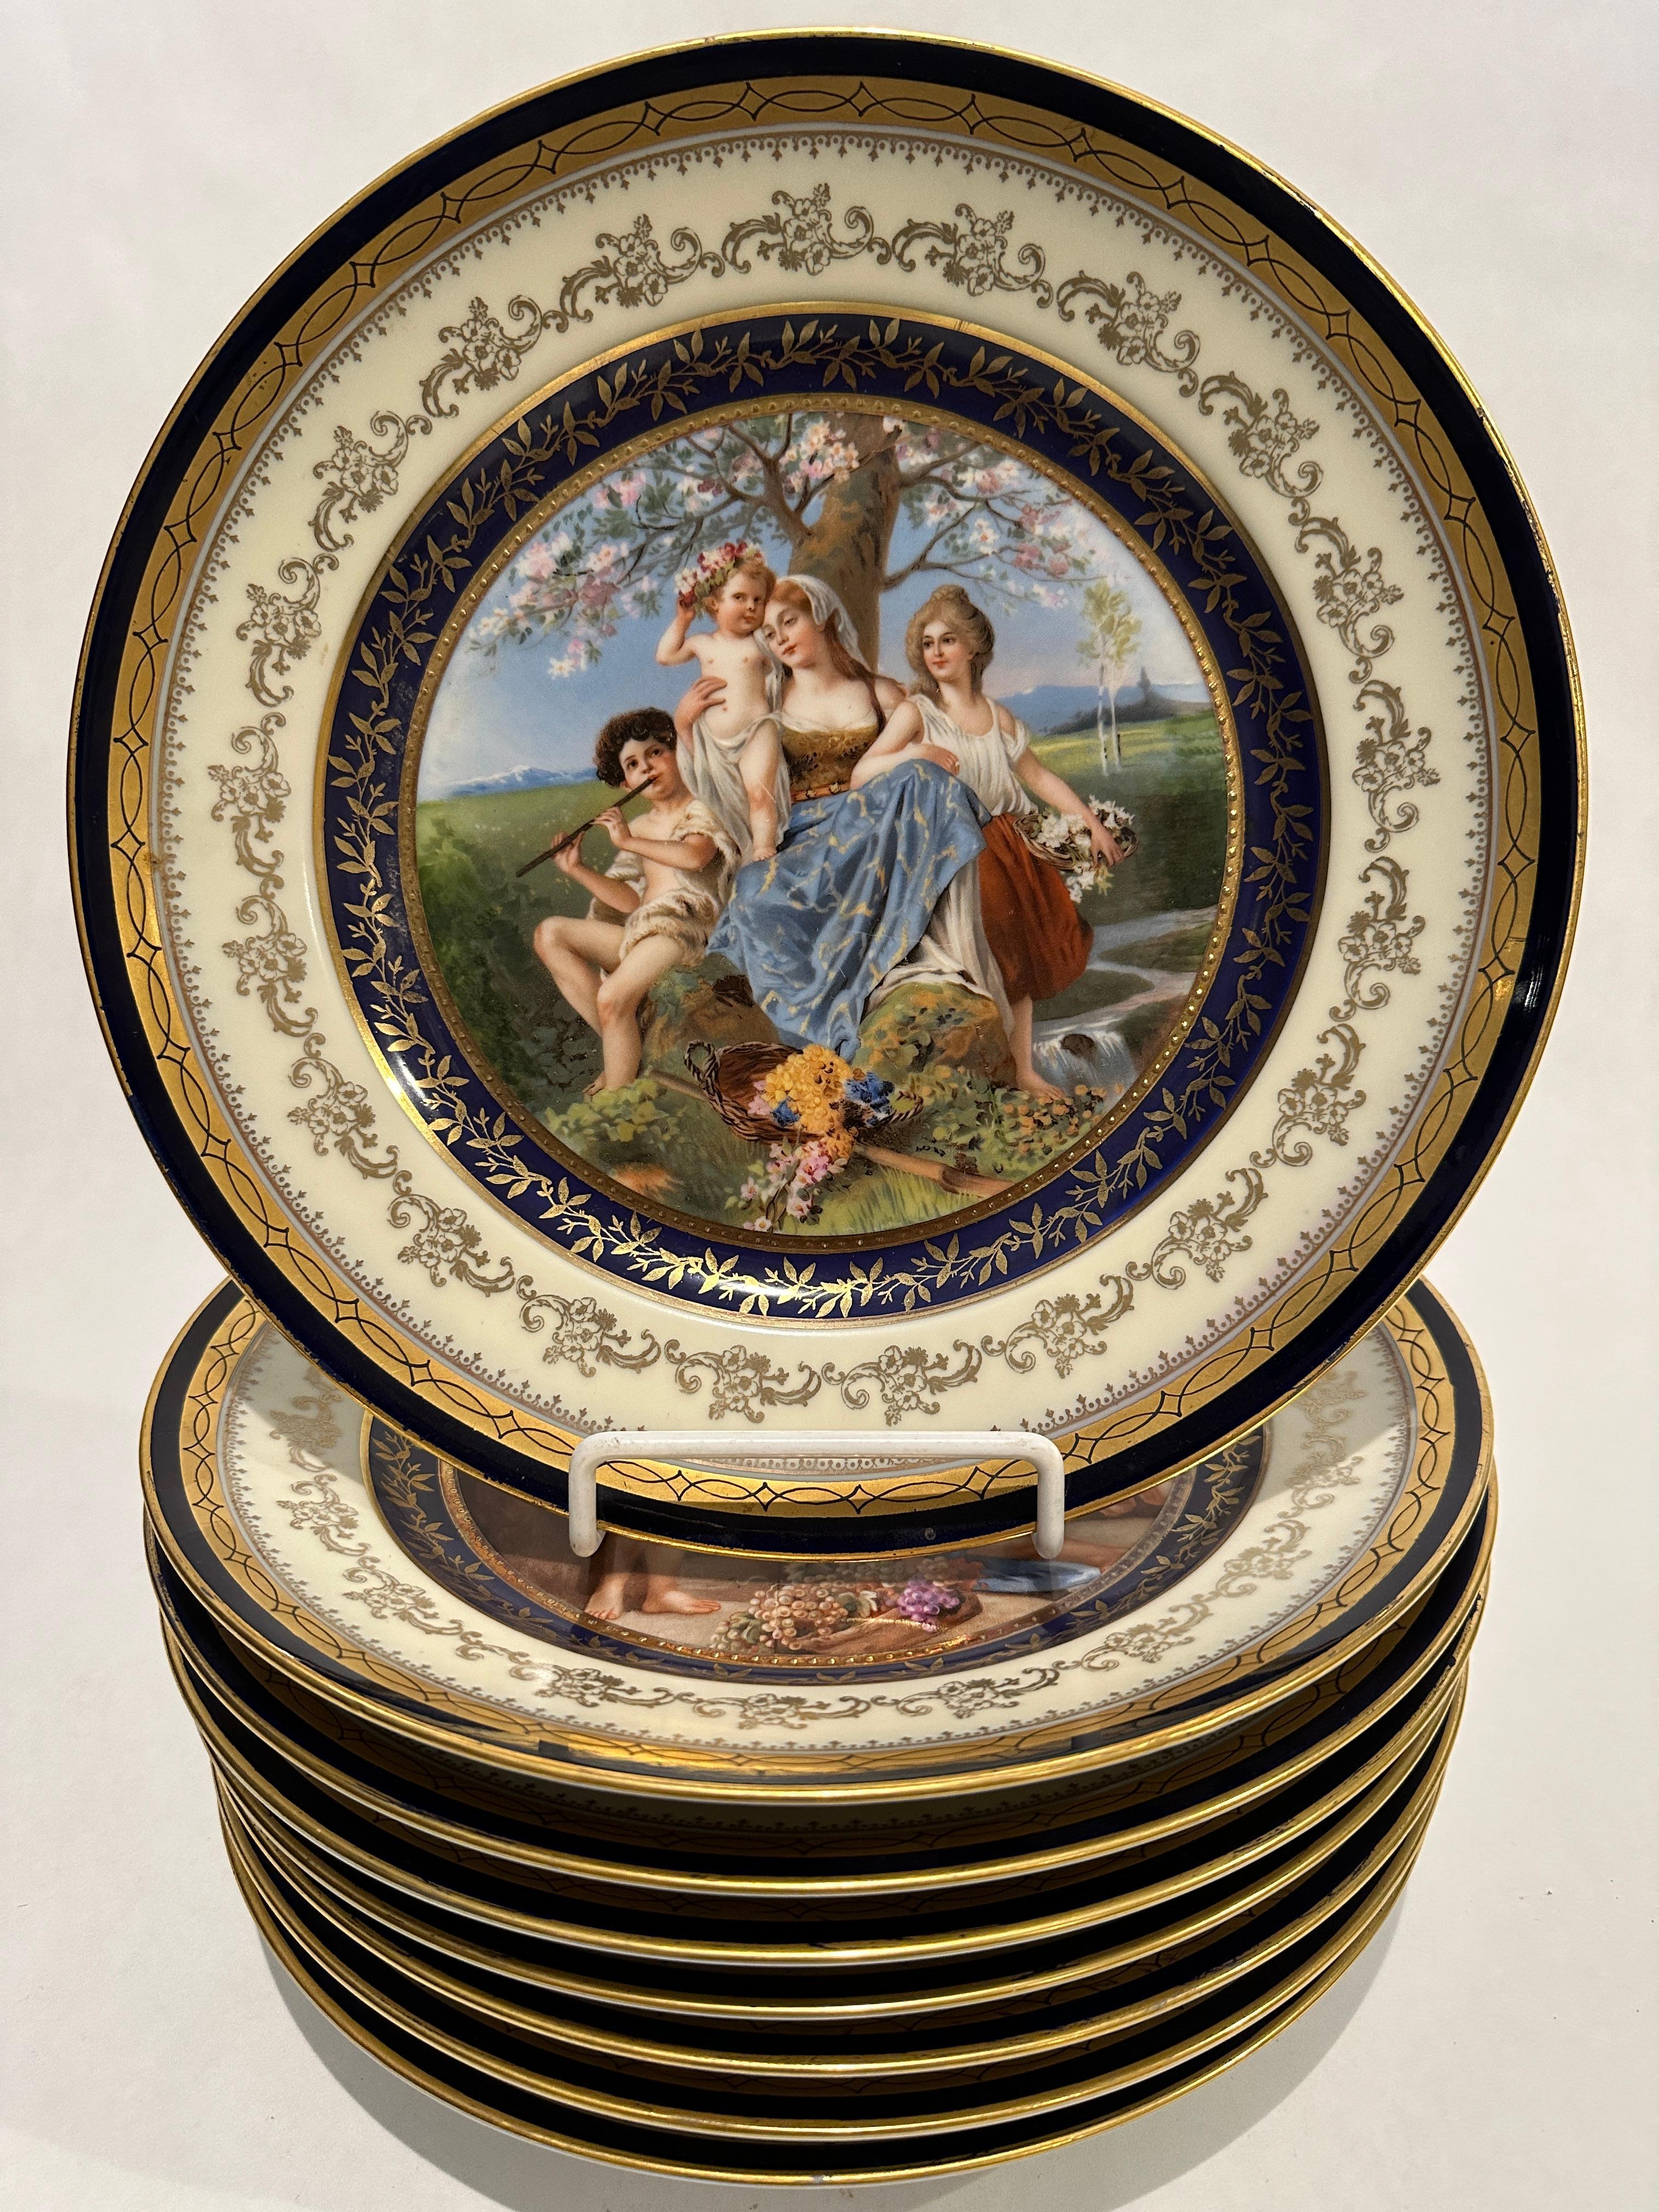 Un ensemble élaboré de 8 assiettes de cabinet en porcelaine continentale peintes à la main avec des bordures cobalt et or. Les assiettes mesurent 10,88 pouces de diamètre et représentent 8 scènes allégoriques différentes dans des couleurs vibrantes.